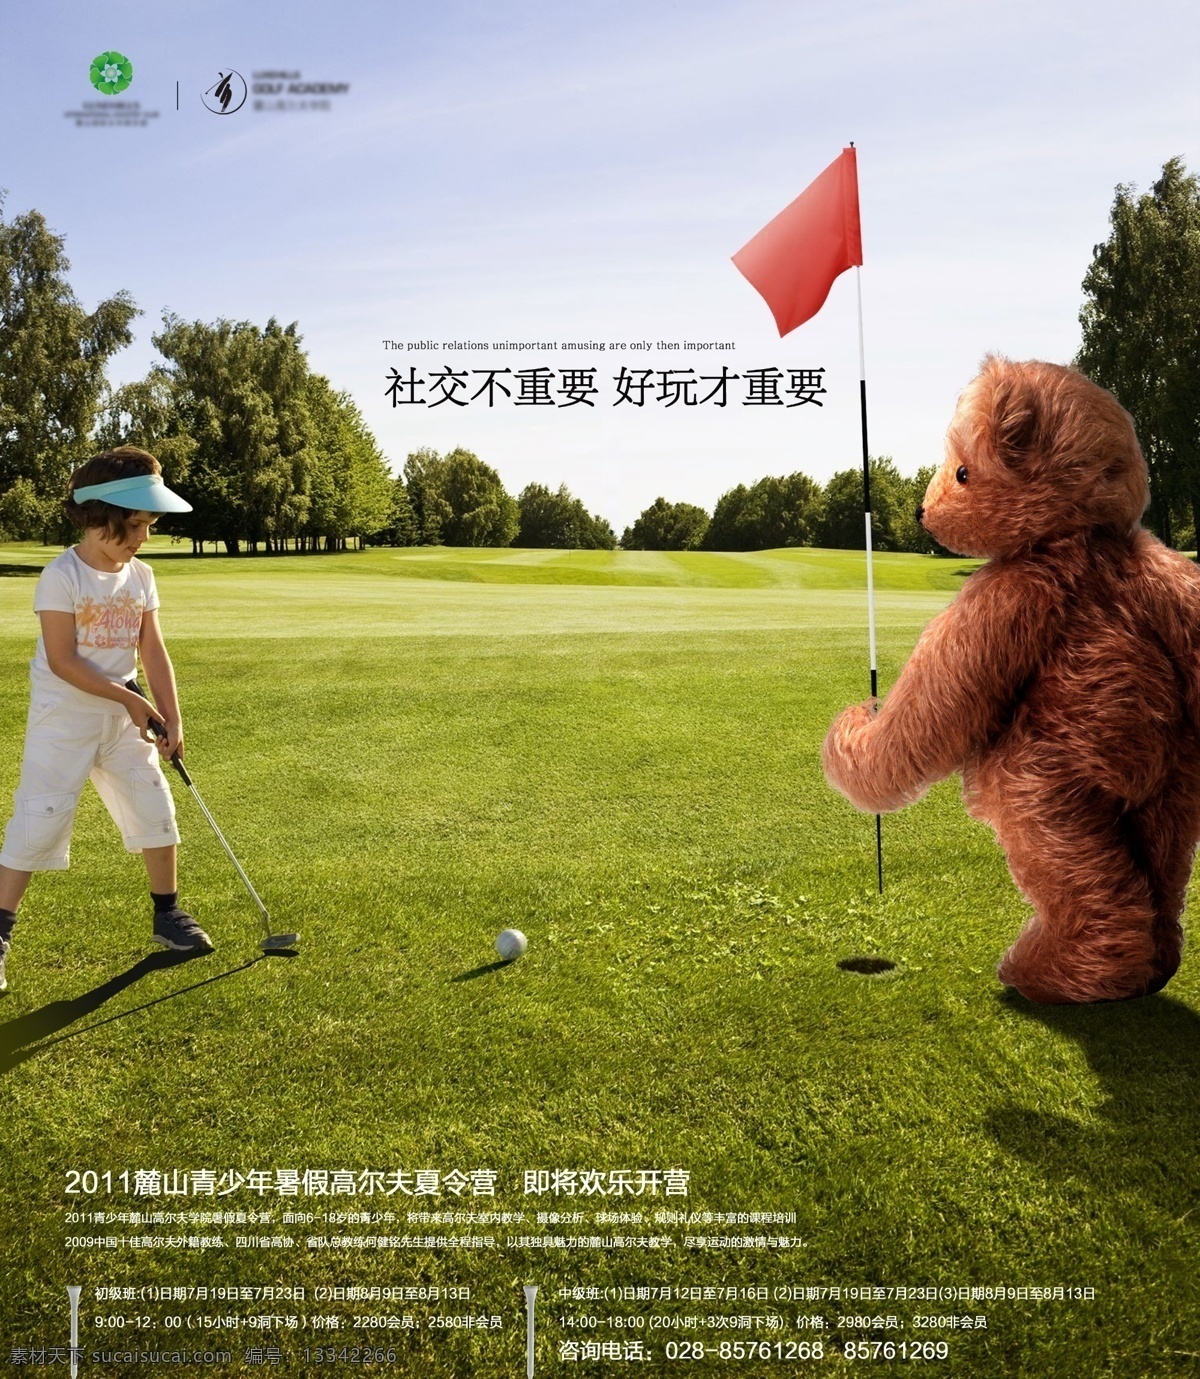 高尔夫运动 小熊 小女孩 球洞 小红旗 高尔夫球场 高尔夫 零售素材